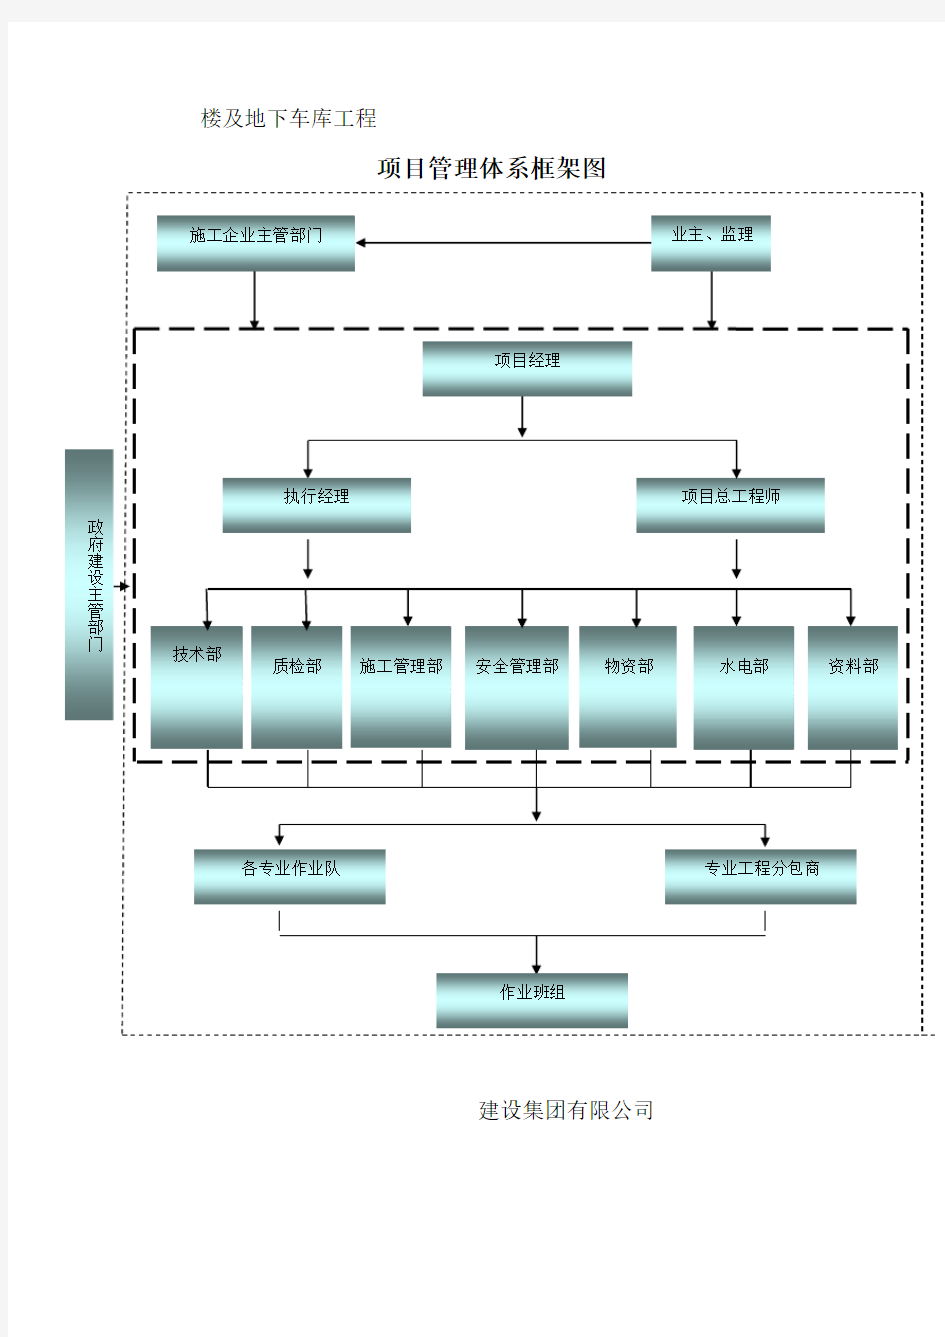 (完整版)项目部管理体系框架图